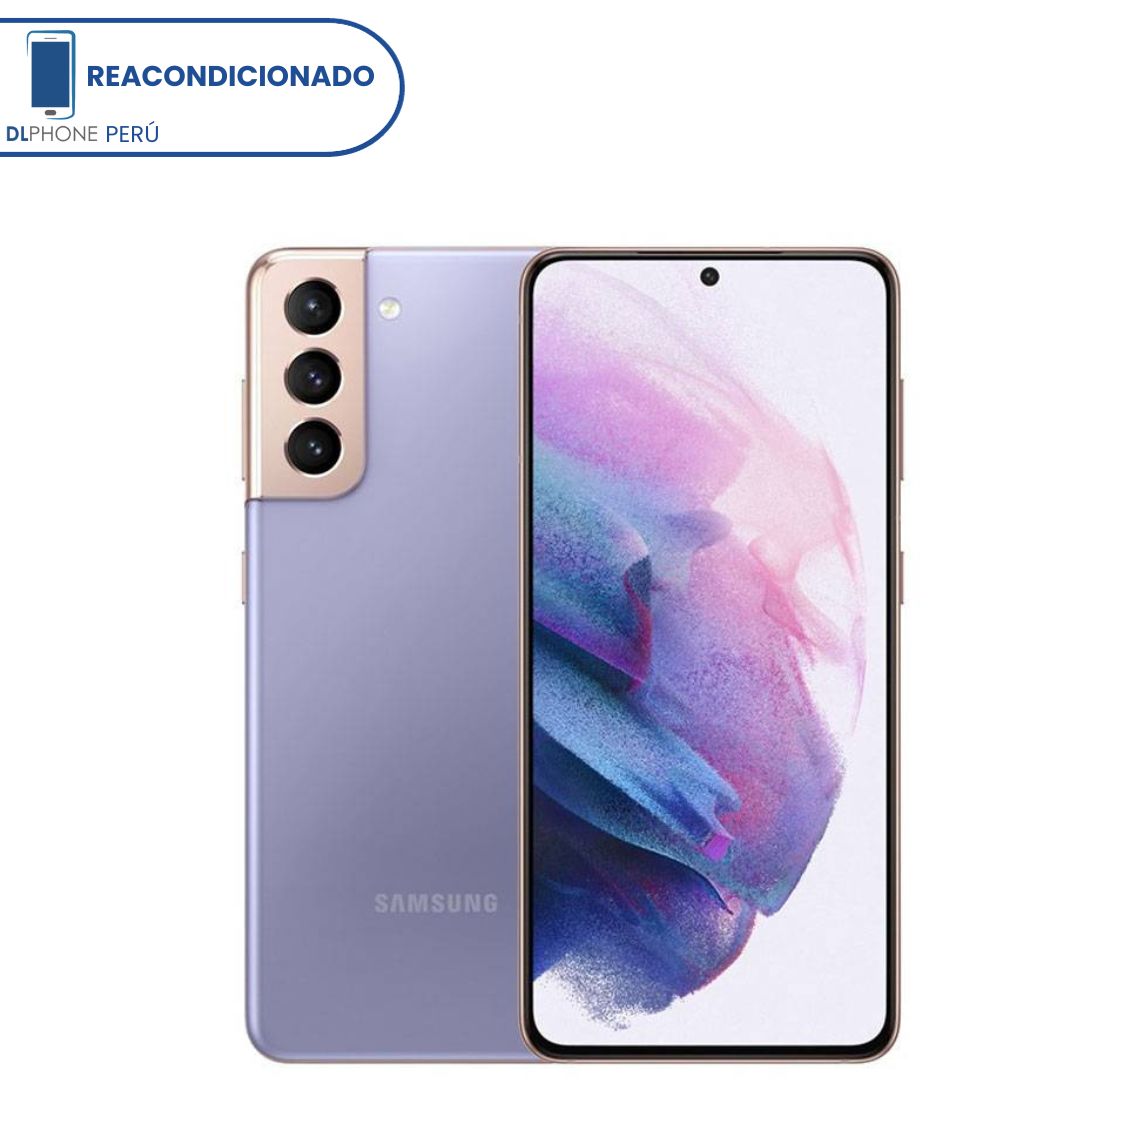 REACONDICIONADO Samsung Galaxy S21 Plus 256GB Violeta